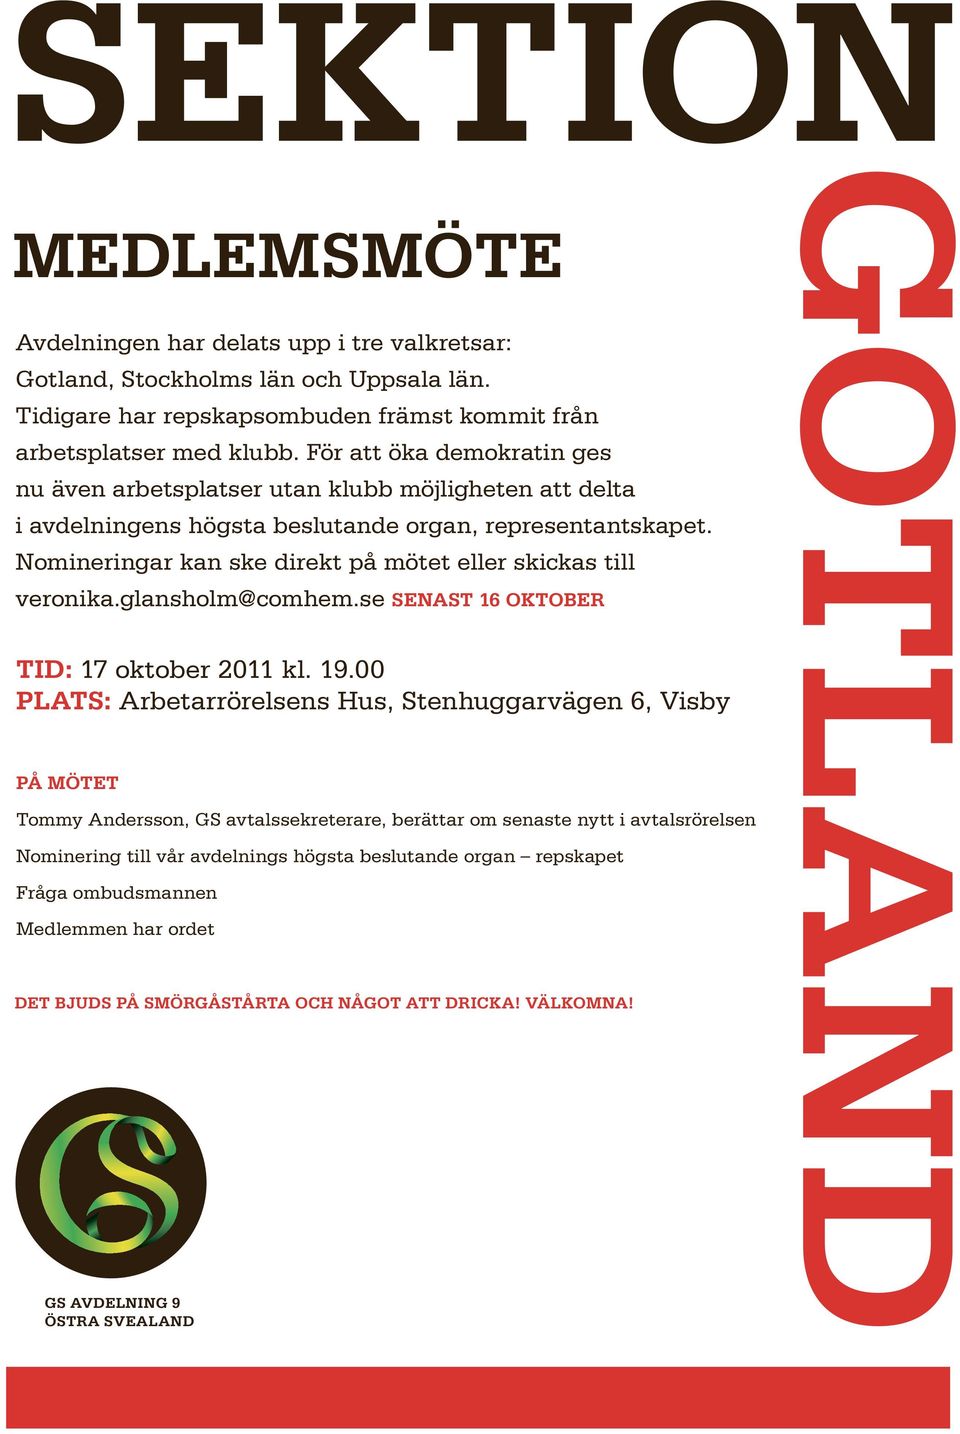 Nomineringar kan ske direkt på mötet eller skickas till veronika.glansholm@comhem.se senast 16 oktober Tid: 17 oktober 2011 kl. 19.